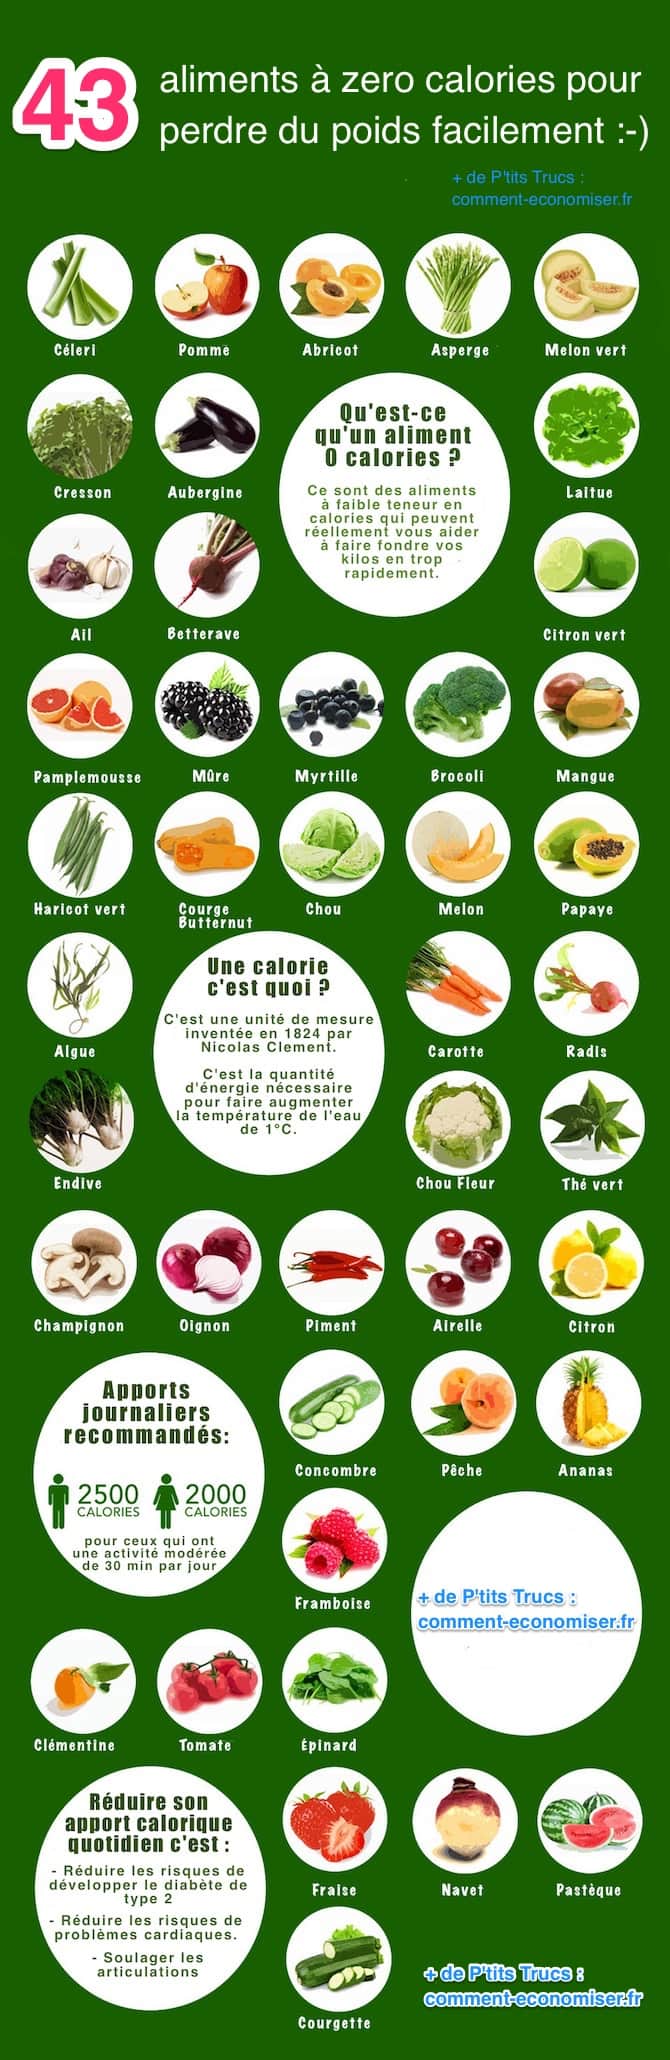 43 نوع من الأطعمة منخفضة السعرات الحرارية لانقاص الوزن بسهولة